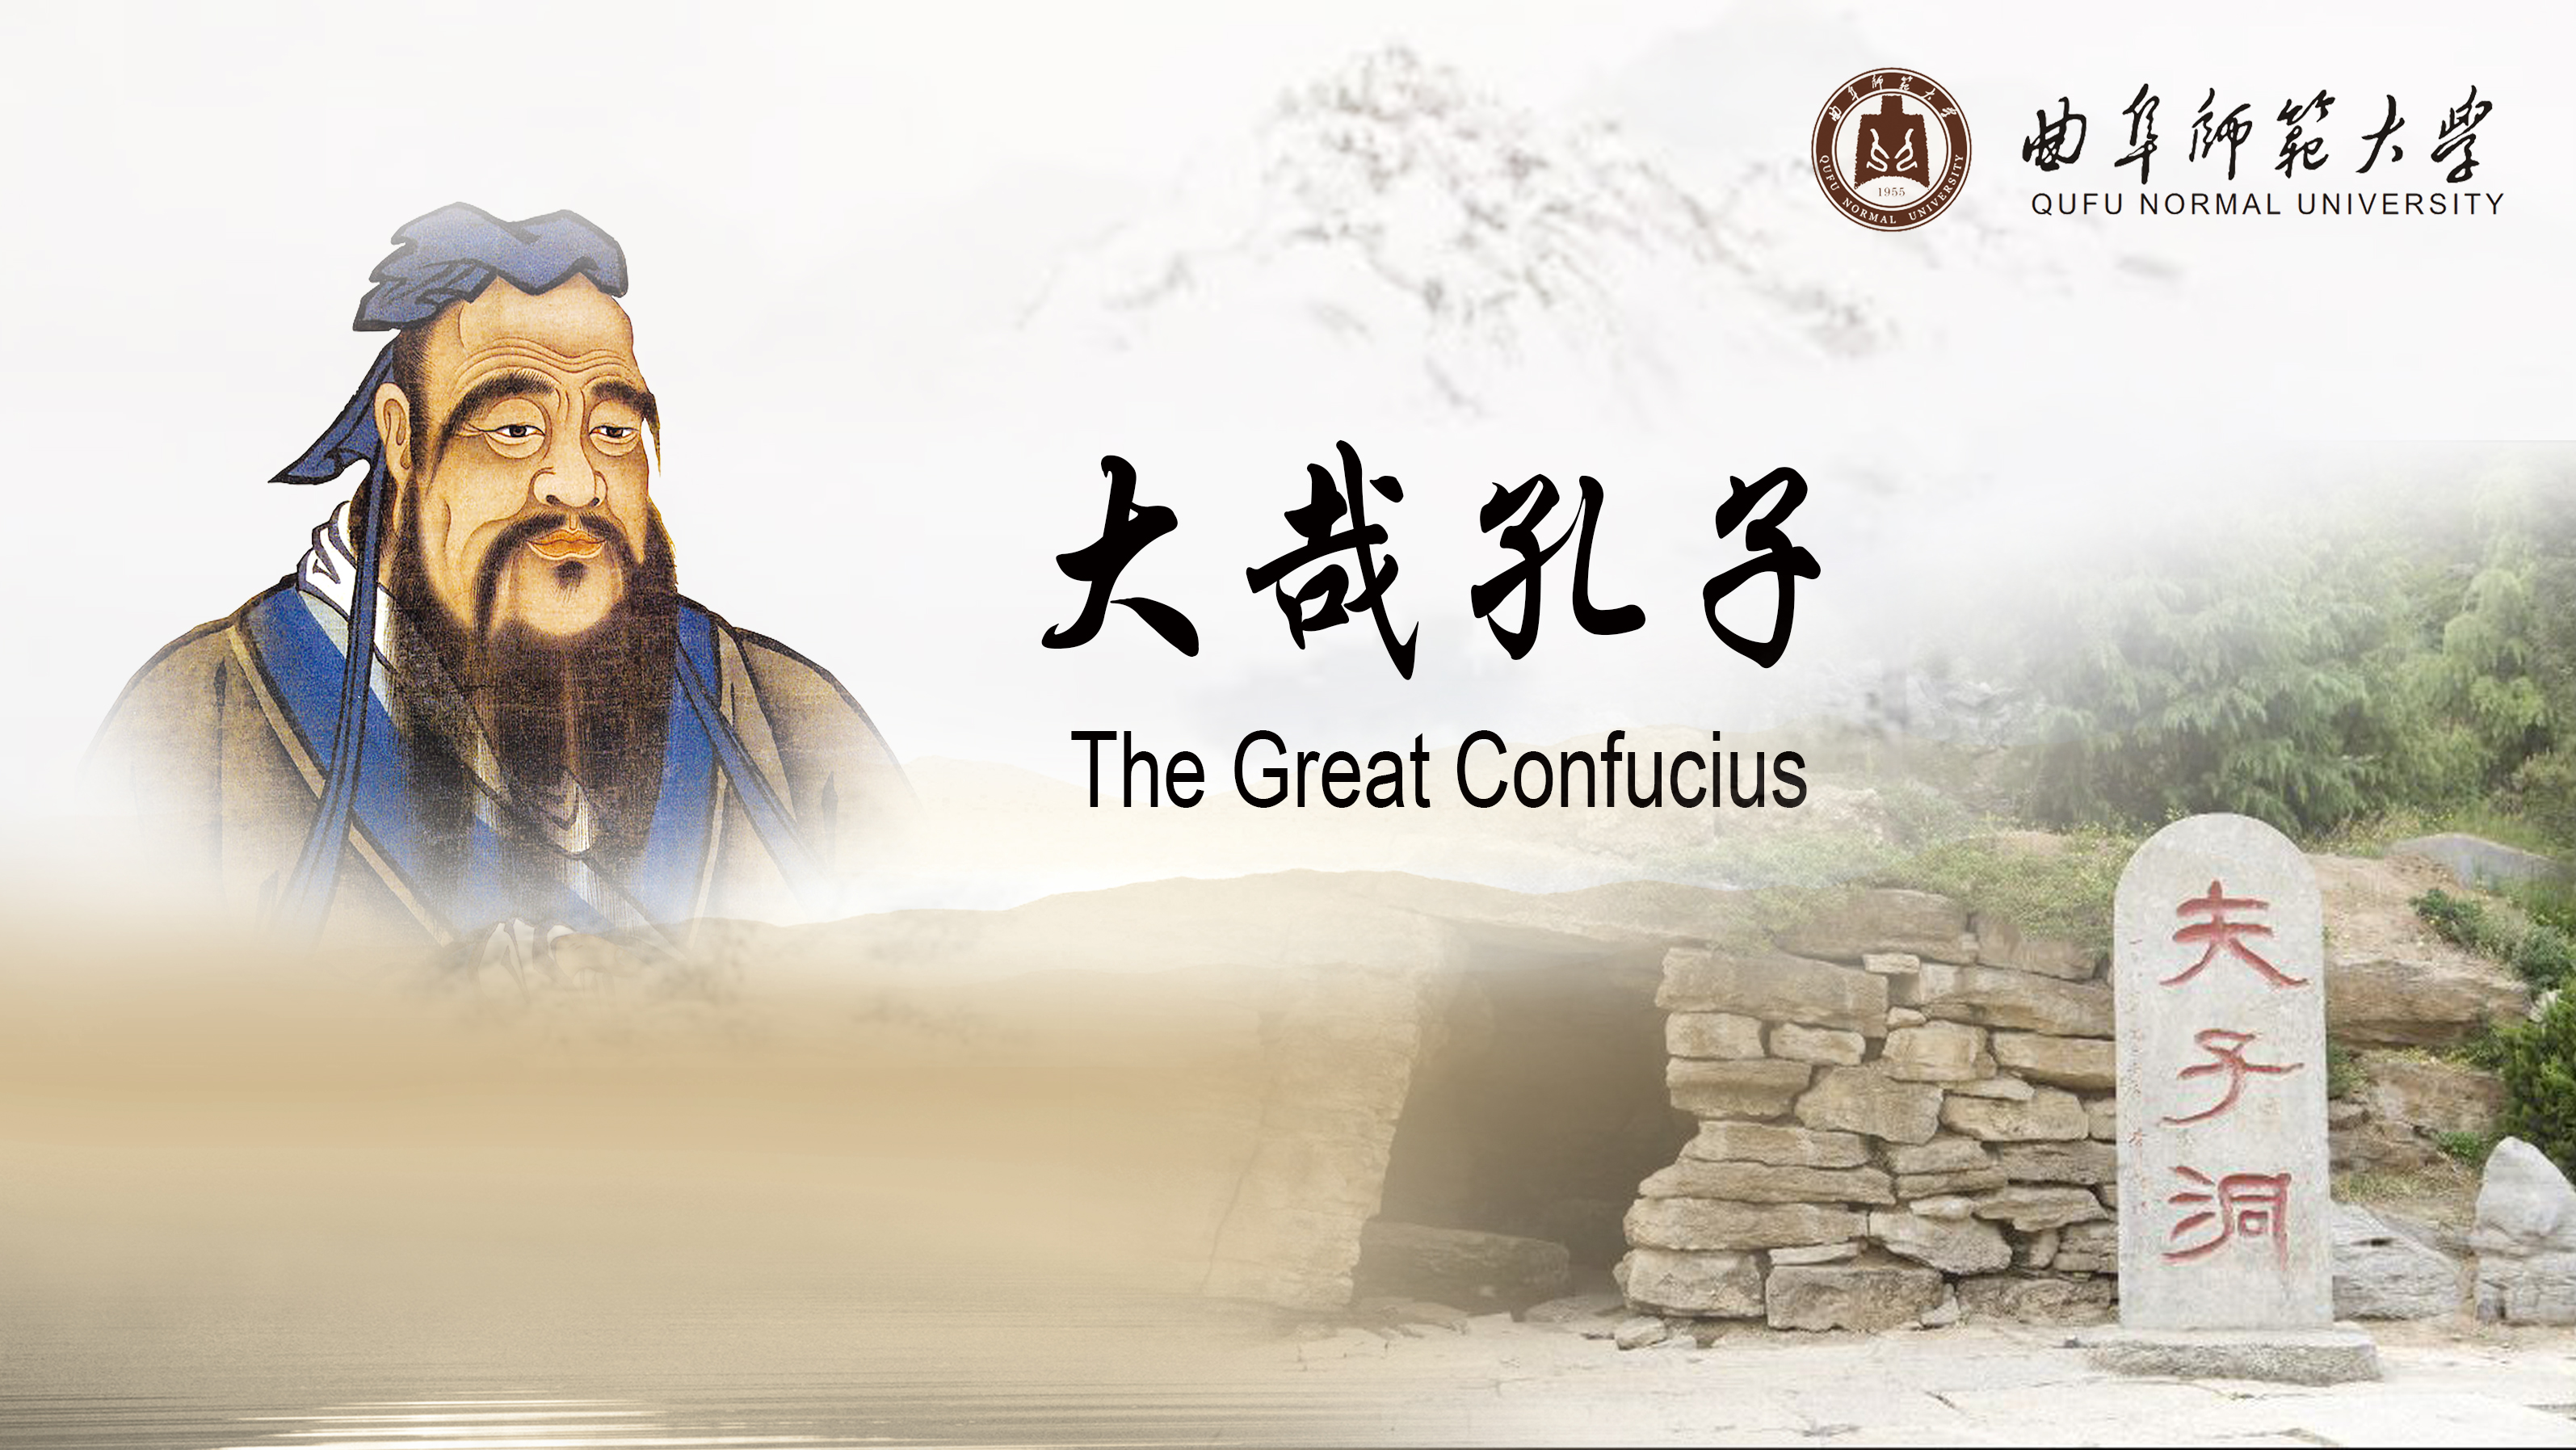 The Great Confucius